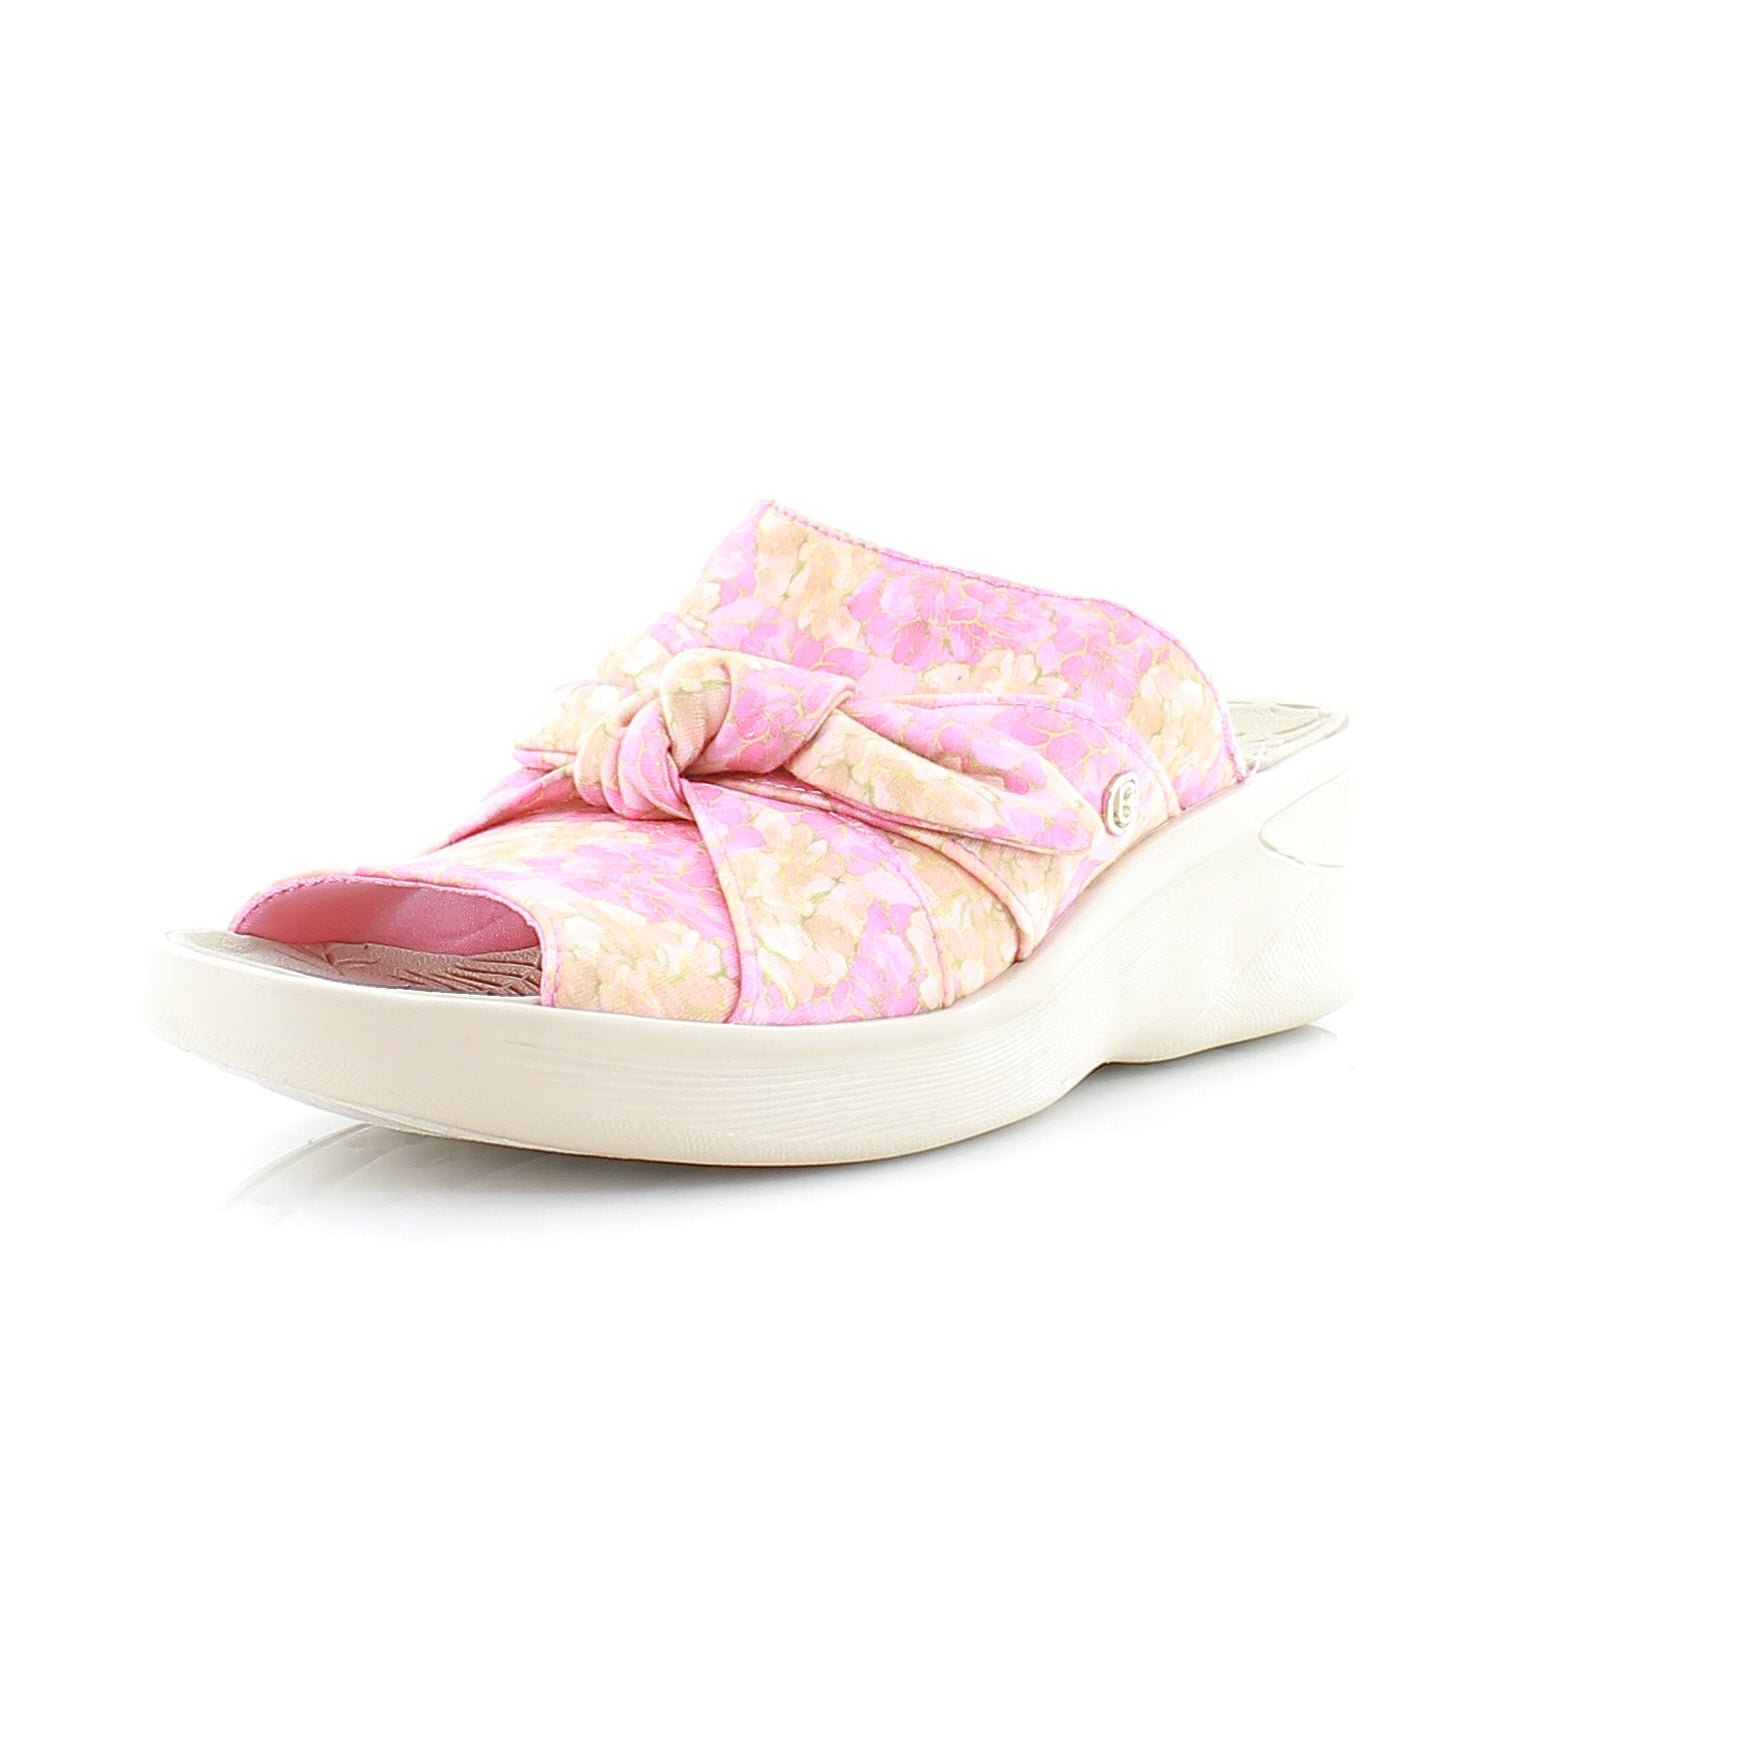 Bzees Smile Women's Sandals & Flip Flops Pink Bouquet Print Size 11 M ...